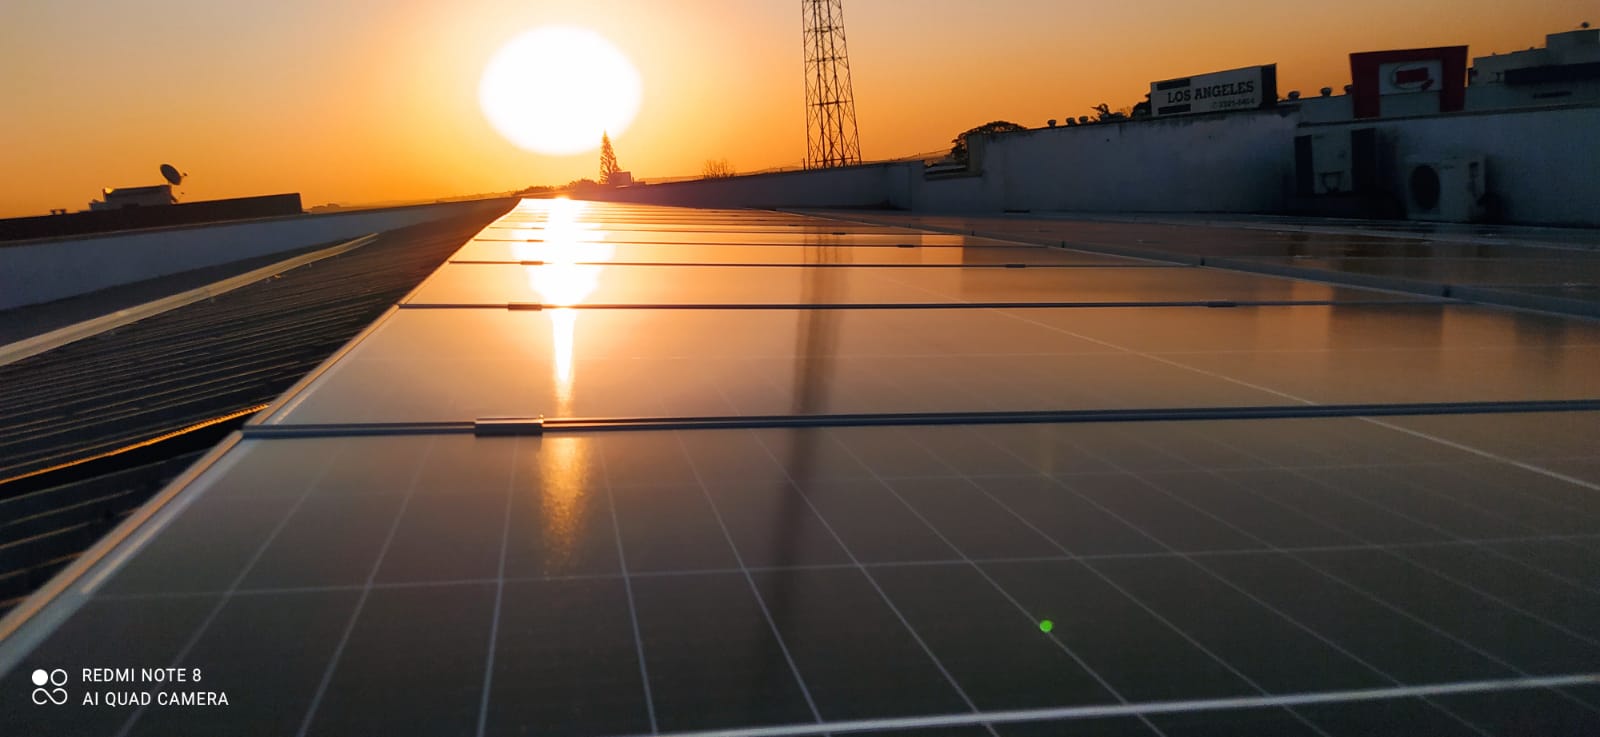 OAB Cascavel se torna modelo de gestão sustentável ao economizar cerca de 88% na conta de energia no primeiro mês com sistema solar ativo